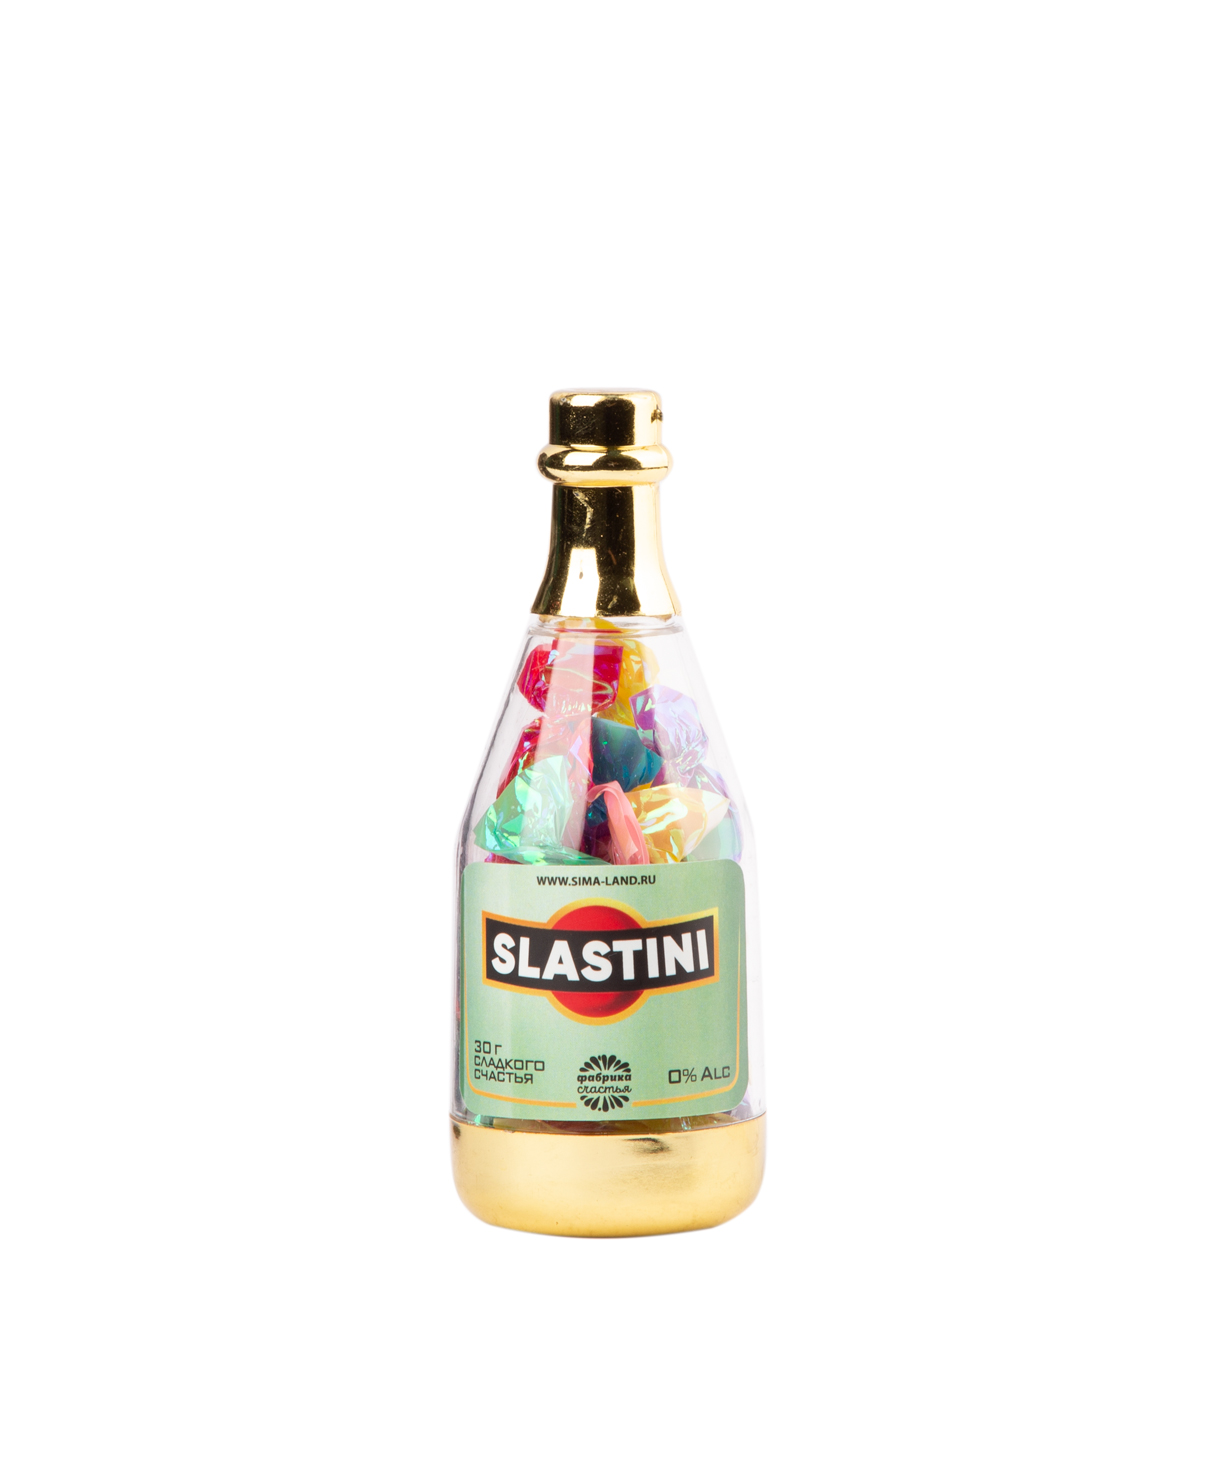 Lollipops `Jpit.am` in a bottle, Slastini